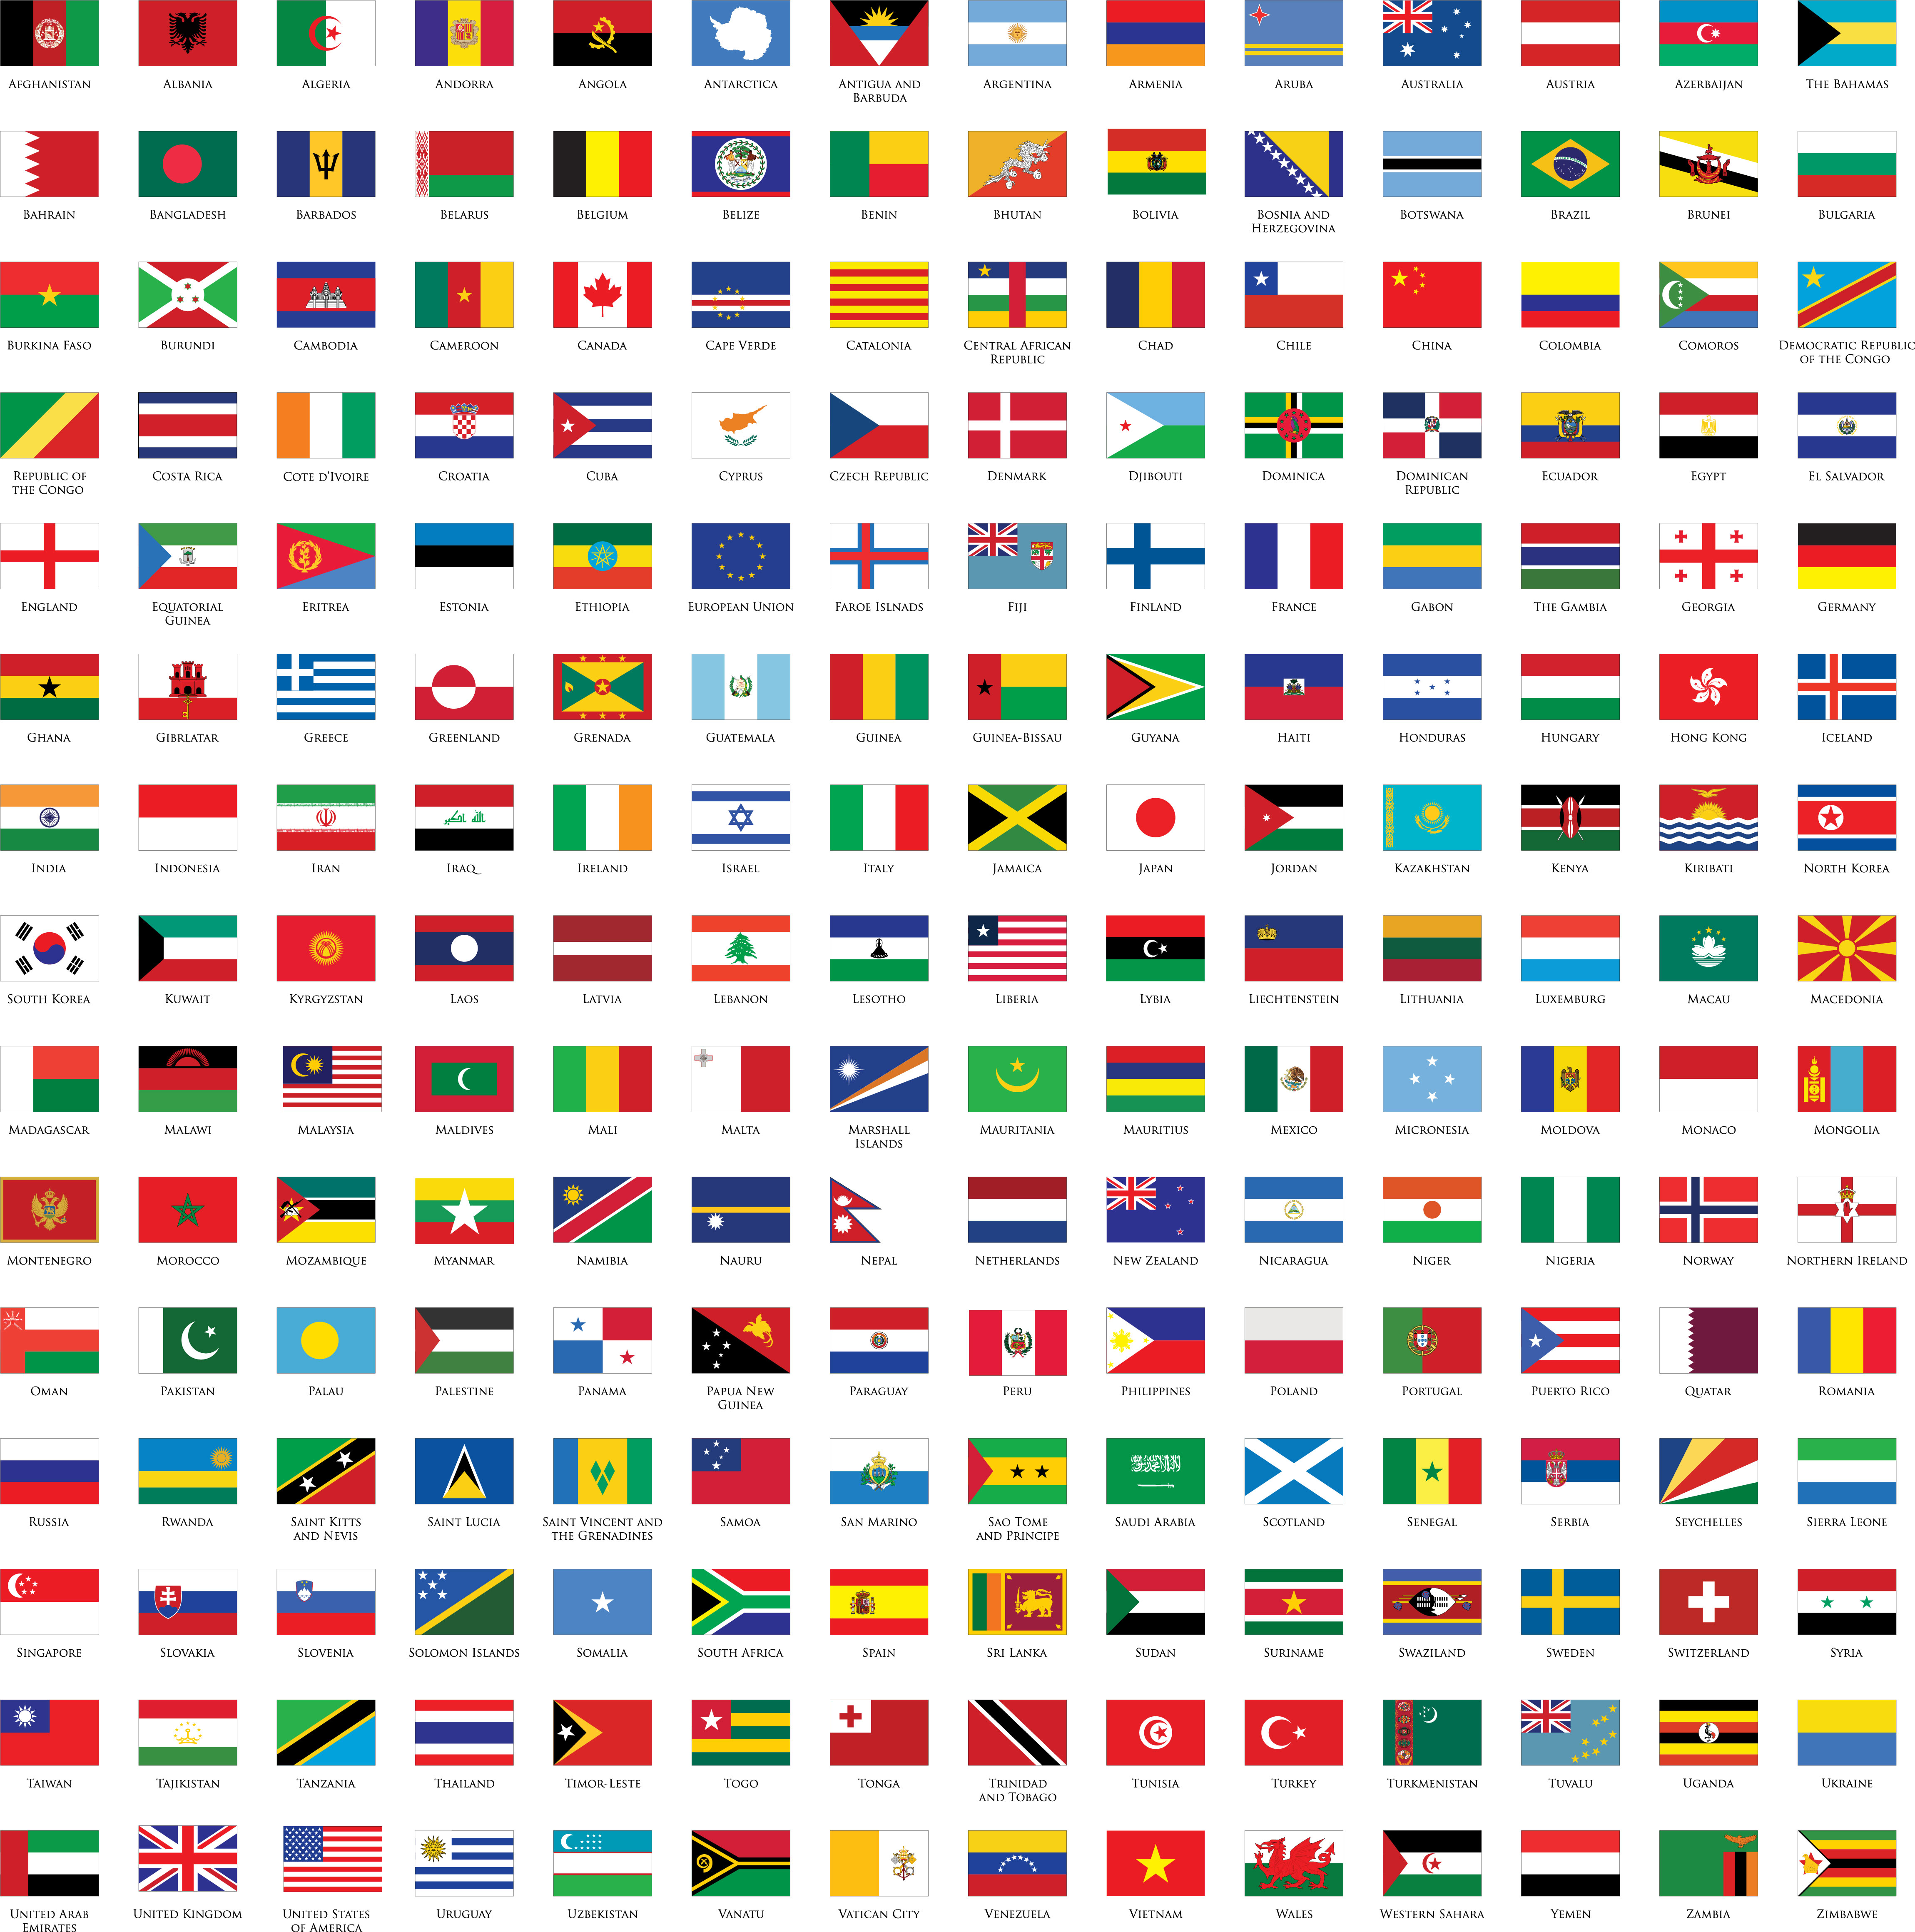 Cờ các nước - Mẫu cờ in chất lượng cao: Bạn cần những mẫu cờ in chất lượng cao để thể hiện tình yêu quê hương, niềm tự hào dân tộc hay mong muốn tìm hiểu về các nước trên thế giới? Chúng tôi cung cấp các mẫu cờ của hầu hết các quốc gia, in chất lượng cao và tươi sáng. Tất cả đều được sản xuất với sự tận tâm và chuyên nghiệp để đáp ứng nhu cầu của bạn.